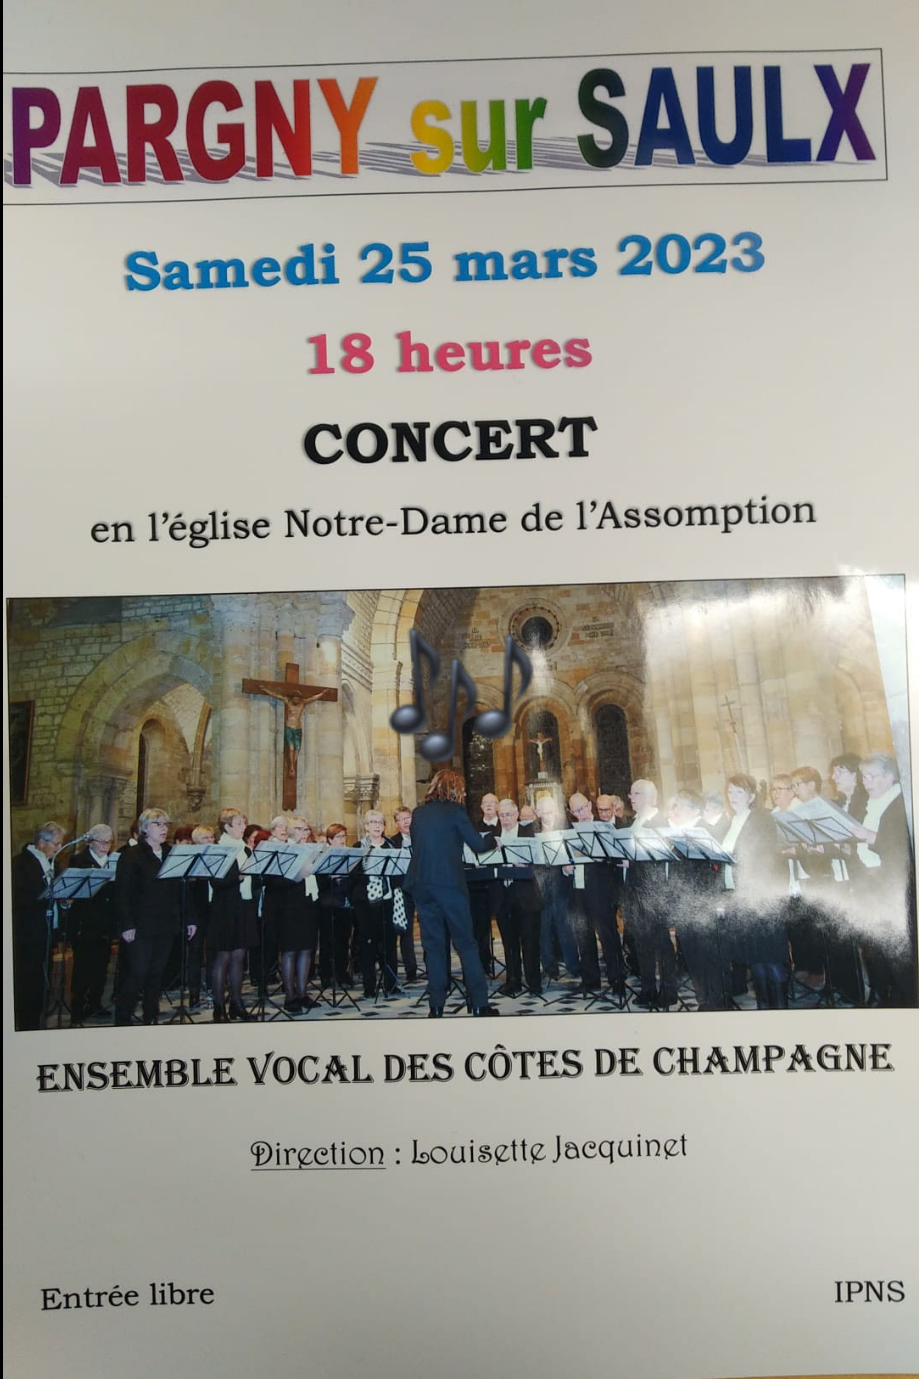 Pargny sur Saulx, le 25 mars 2023 à 18h, concert en l’église Notre Dame de l’Assomption